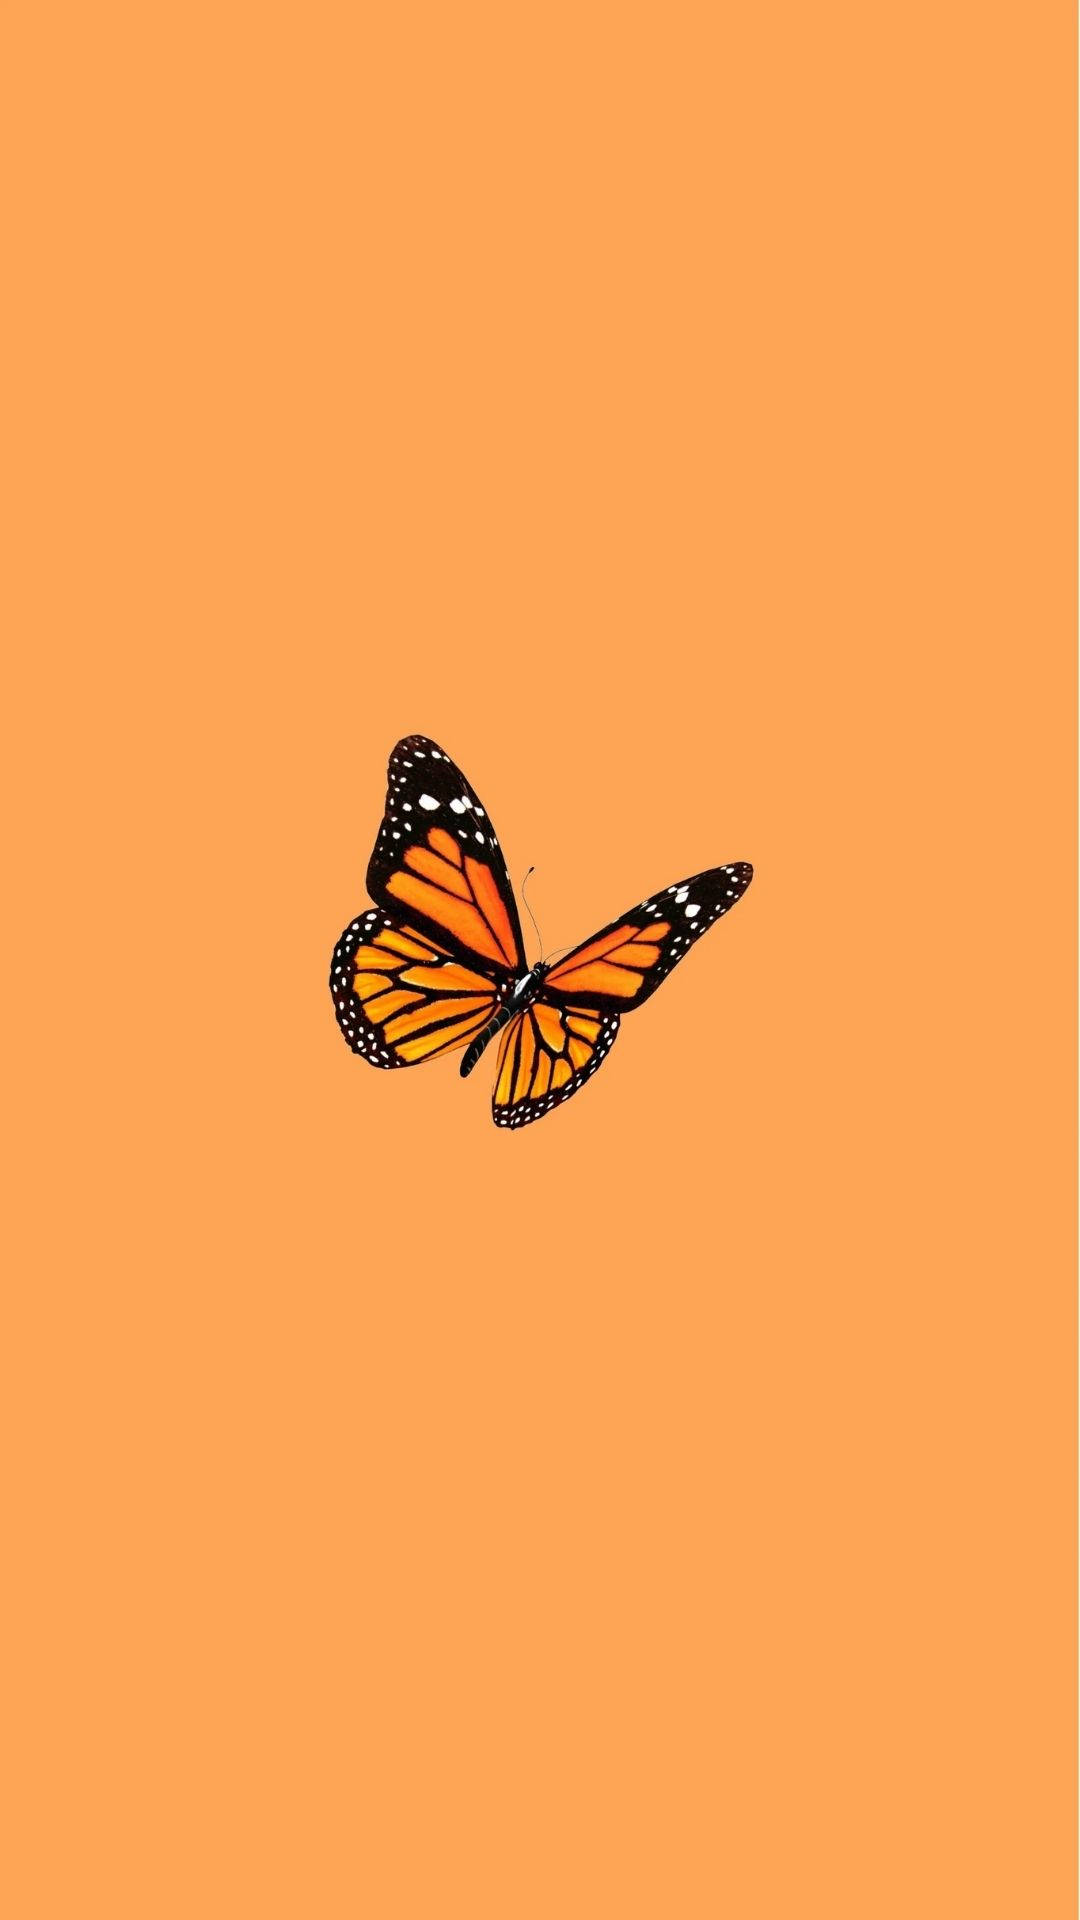 Butterfly In Orange Background Wallpaper